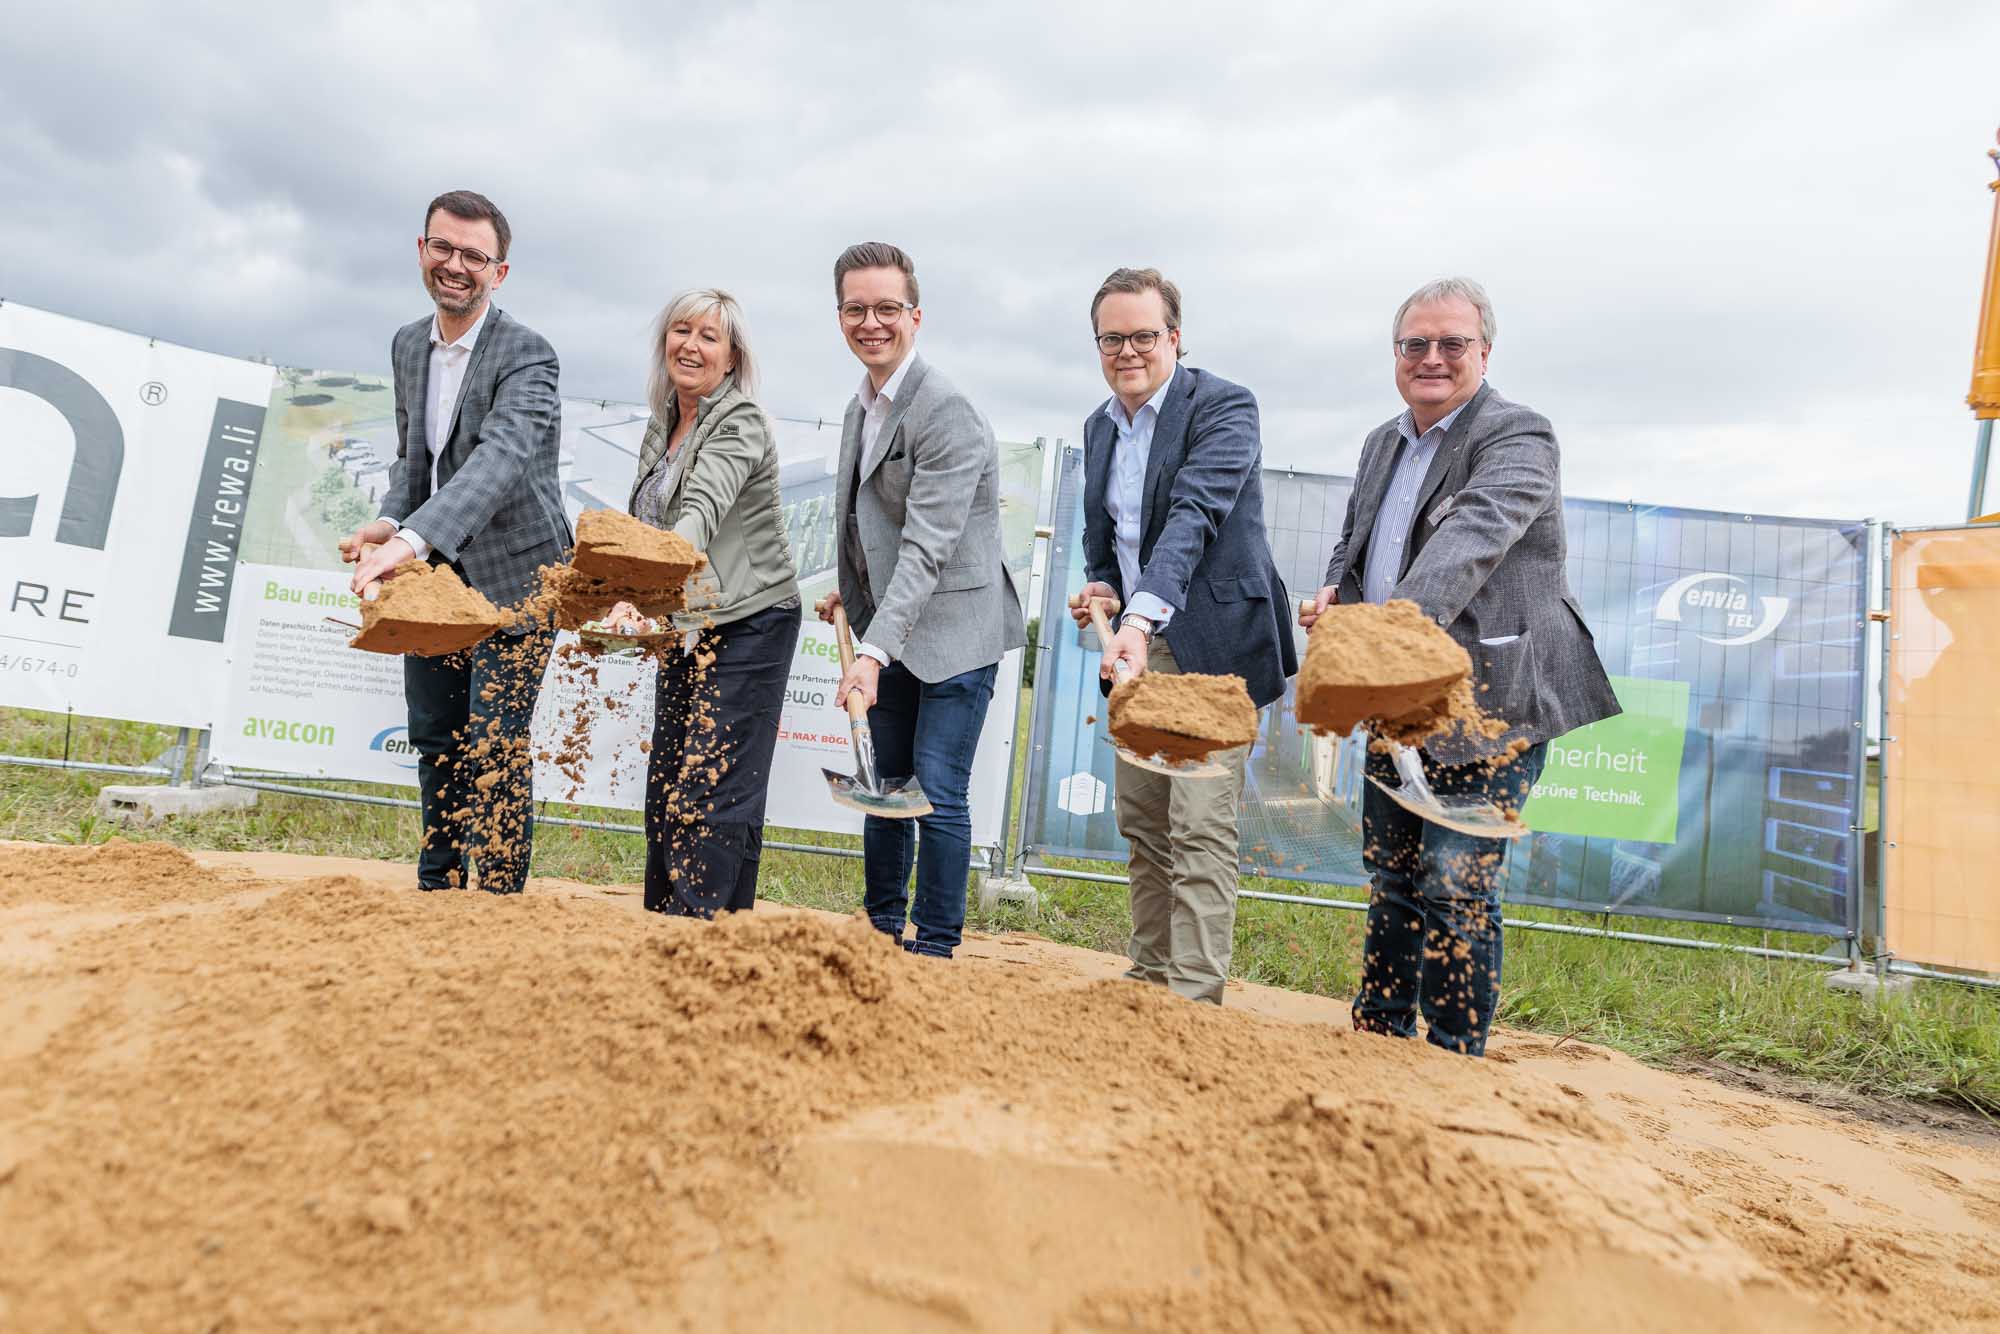 Spatenstich für Hochleistungs-Rechenzentrum in Sehnde: Avacon und enviaM-Gruppe bauen für eine nachhaltige IT-Infrastruktur in der Region Hannover